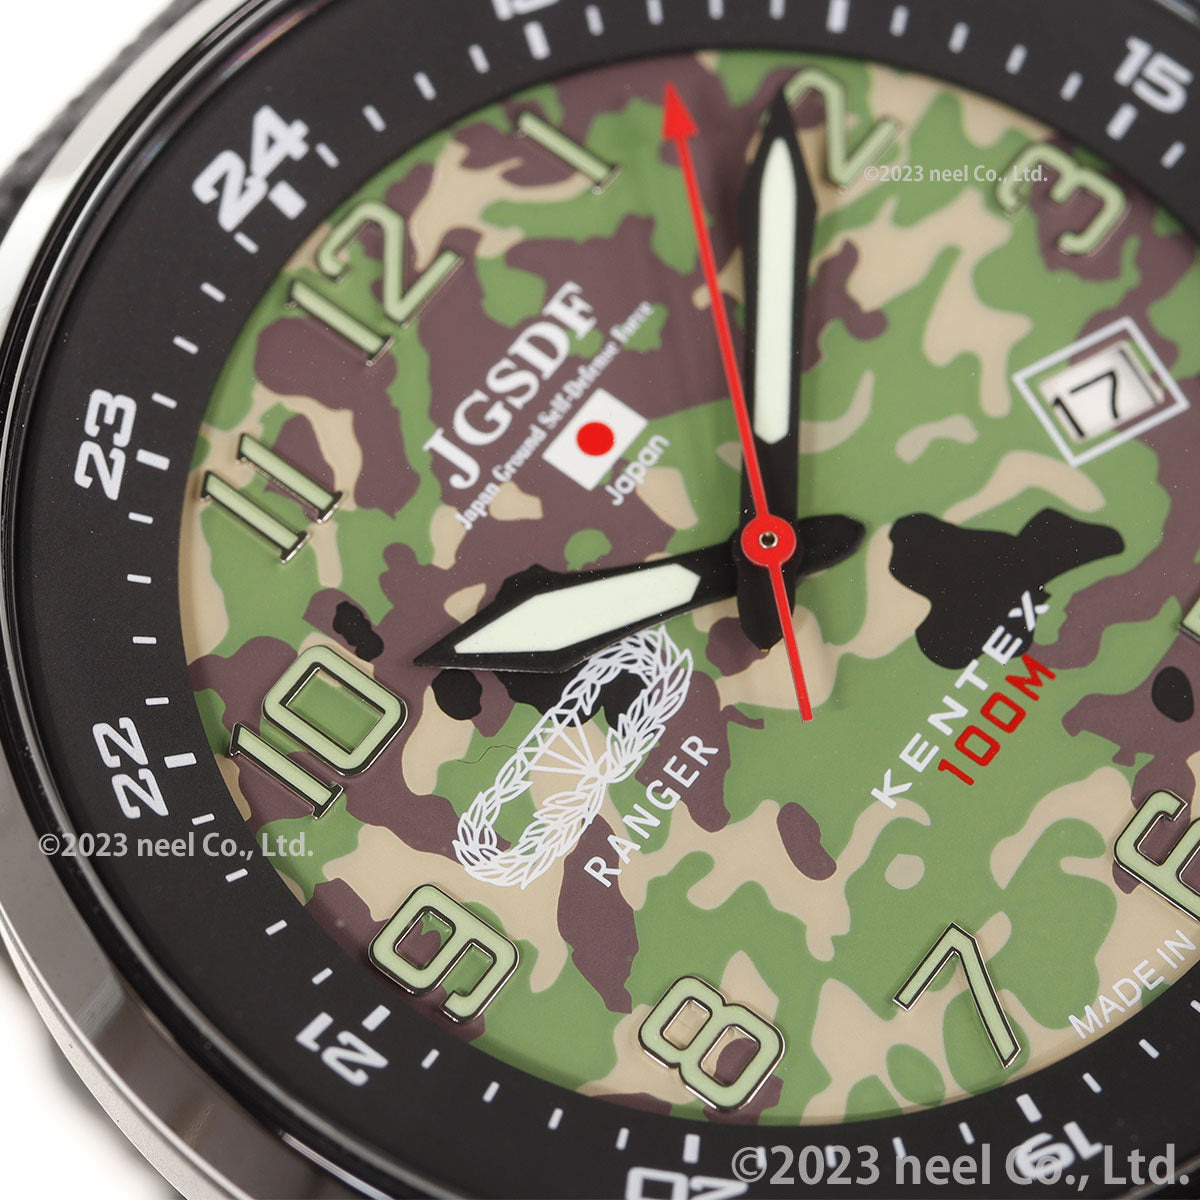 ケンテックス KENTEX JSDF 陸上自衛隊モデル 腕時計 時計 メンズ 日本製 S715M-8